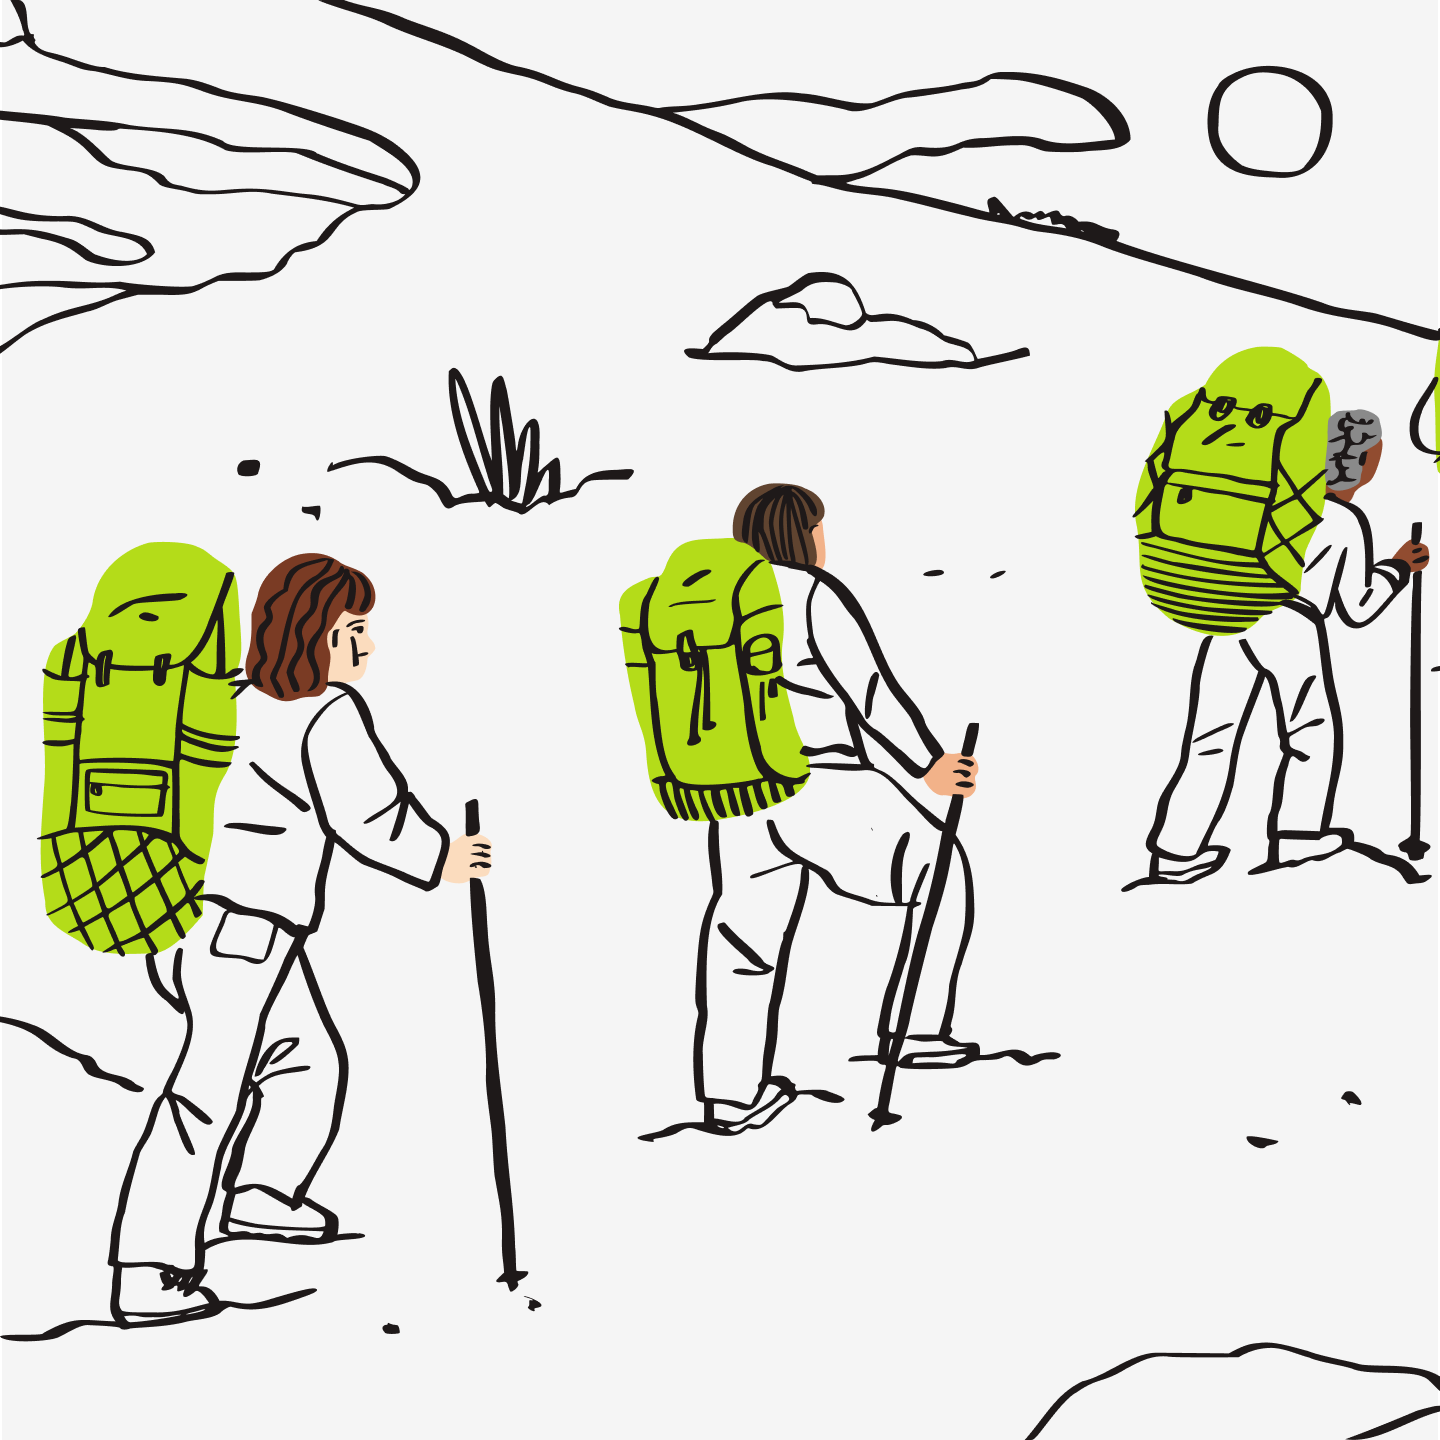 Ilustracja przedstawiająca ludzi wchodzących na szczyt góry.